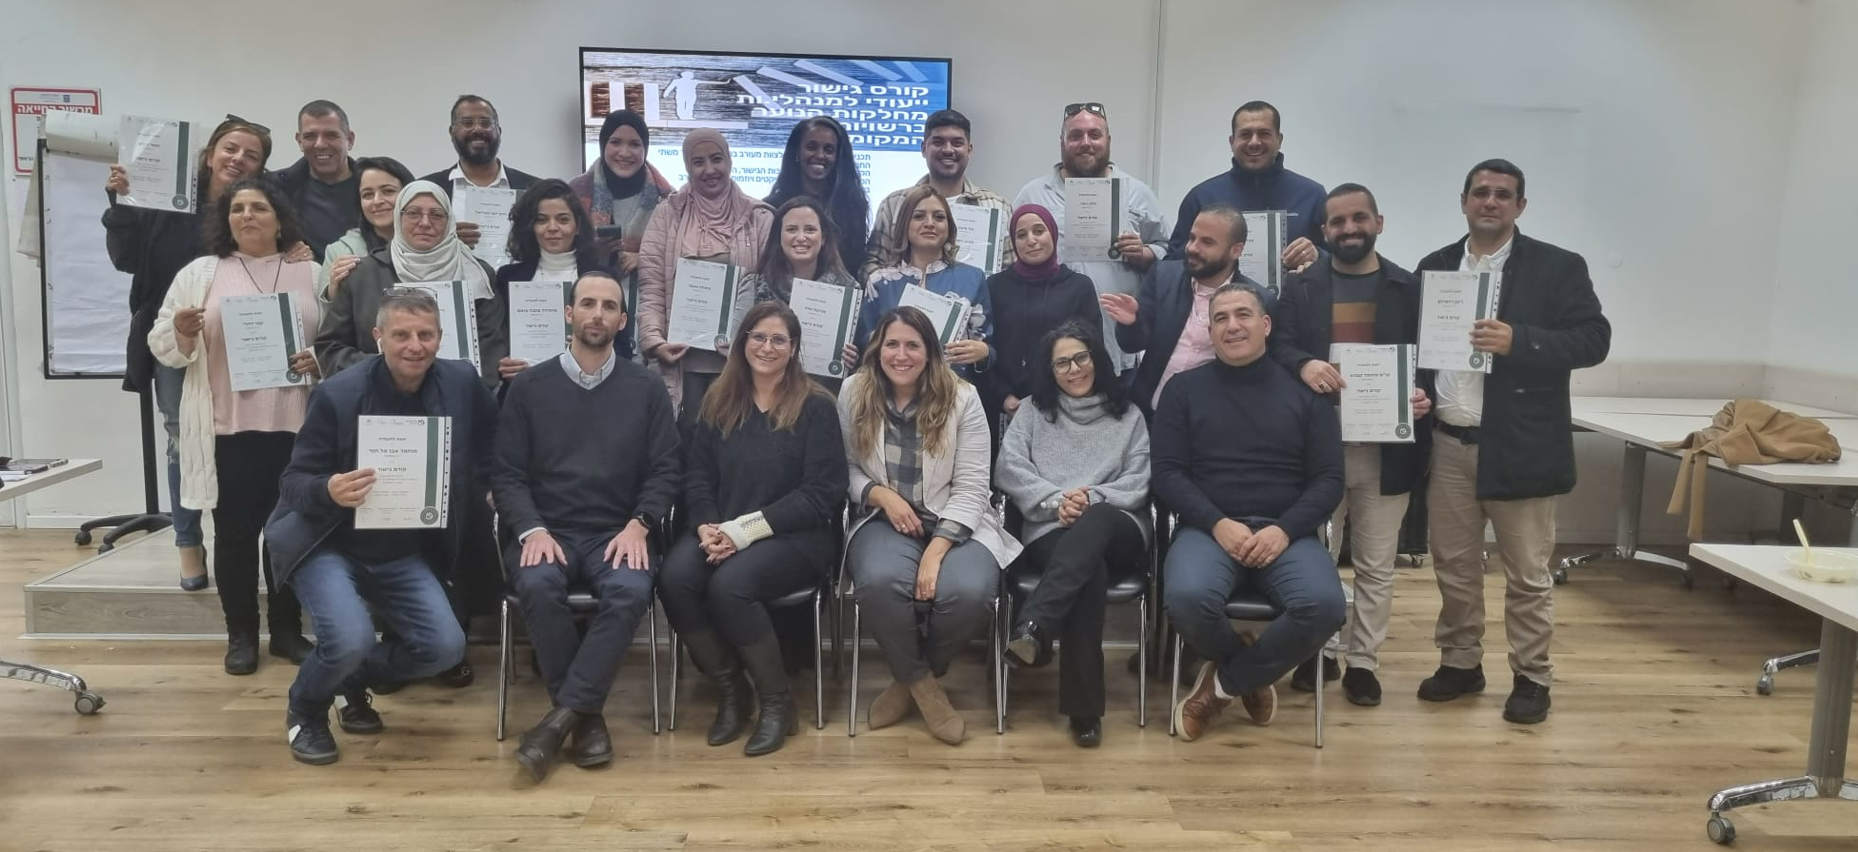 22 מנהלי יחידות נוער יהודים  וערבים, בטקס סיום קורס גישור ייחודי בשיתוף פעולה עם הקונגרס הישראלי, איגוד מנהלי יחידות הנוער ואוניברסיטת בר אילן.